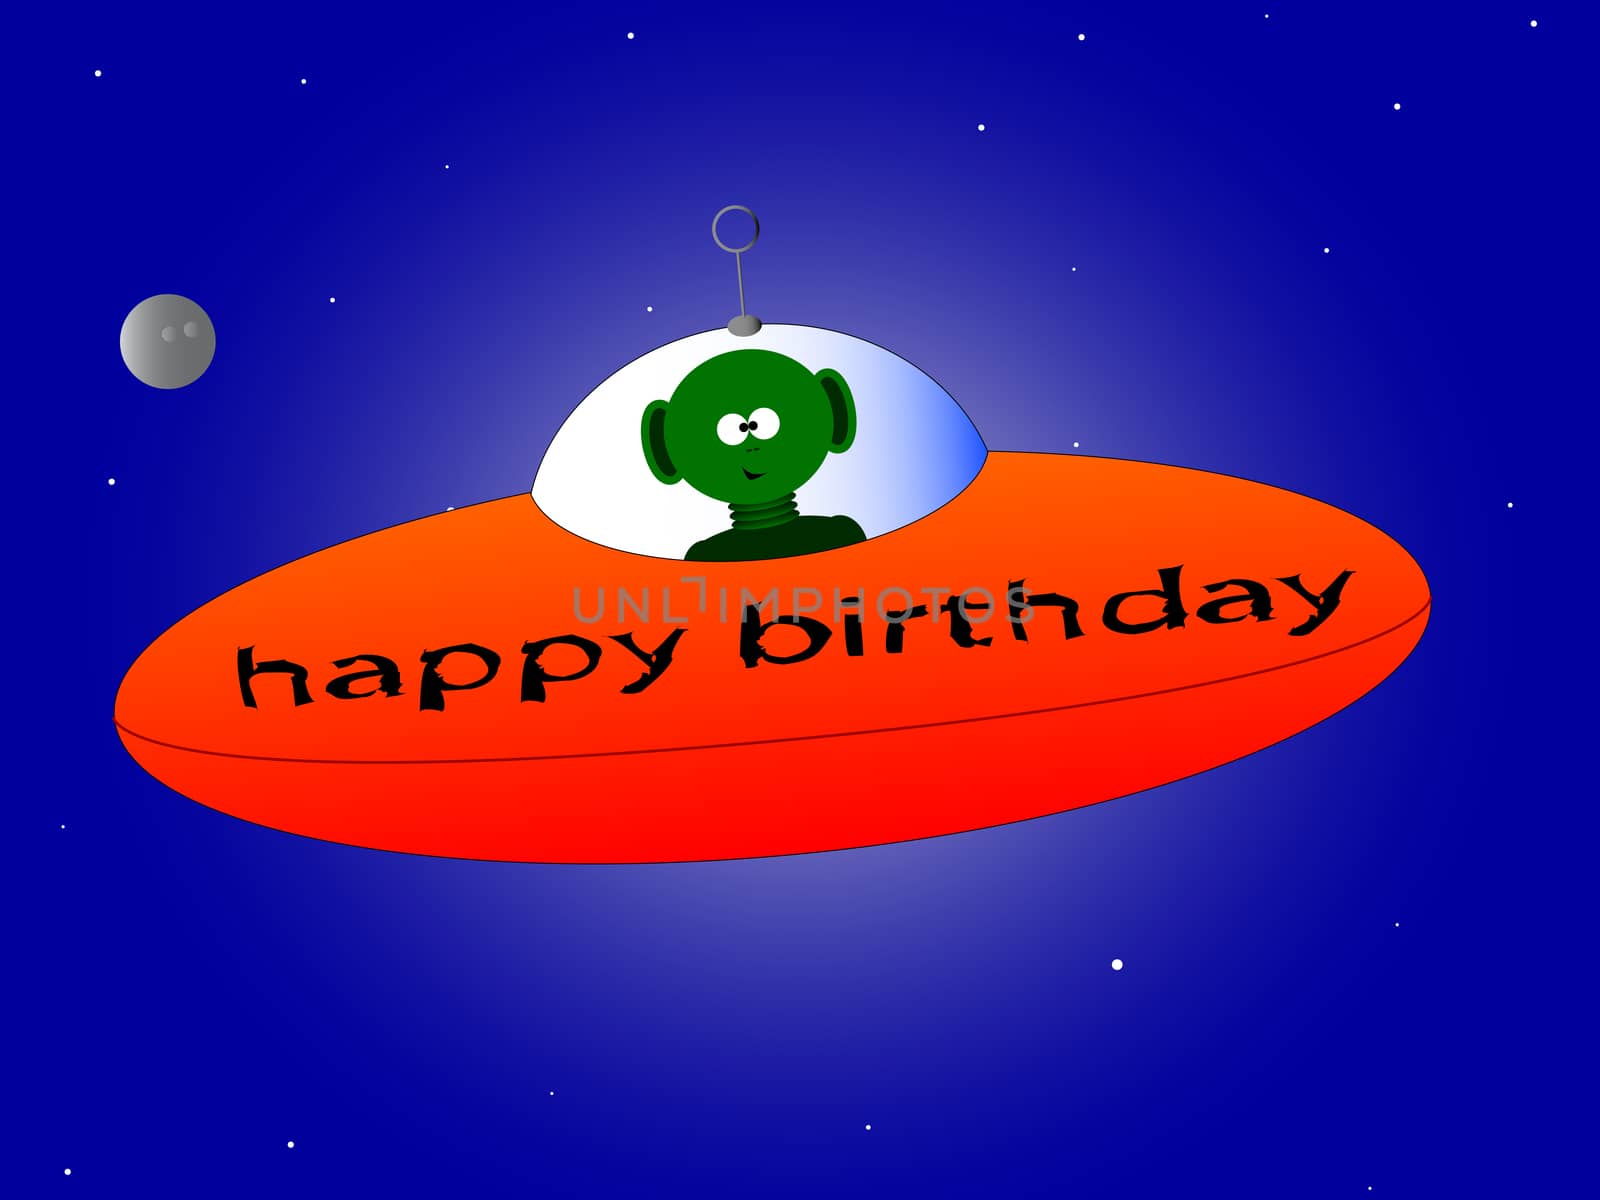 Happy Birthday Alien by Bigalbaloo